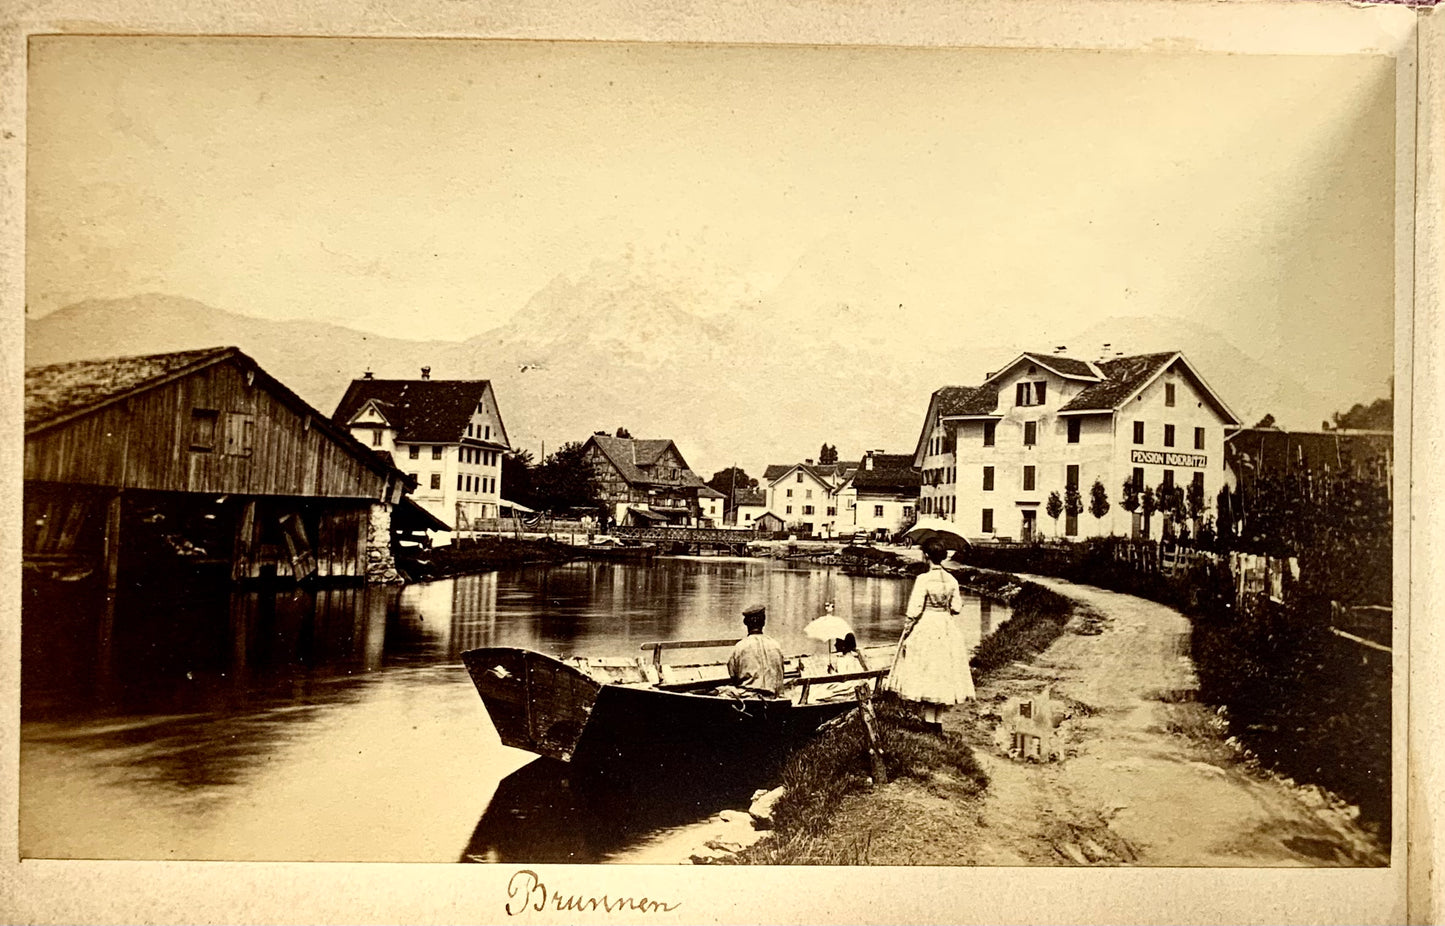 Lac des Quatre-Cantons des années 1860, Album souvenir, 10 photos albumen très anciennes, Suisse 